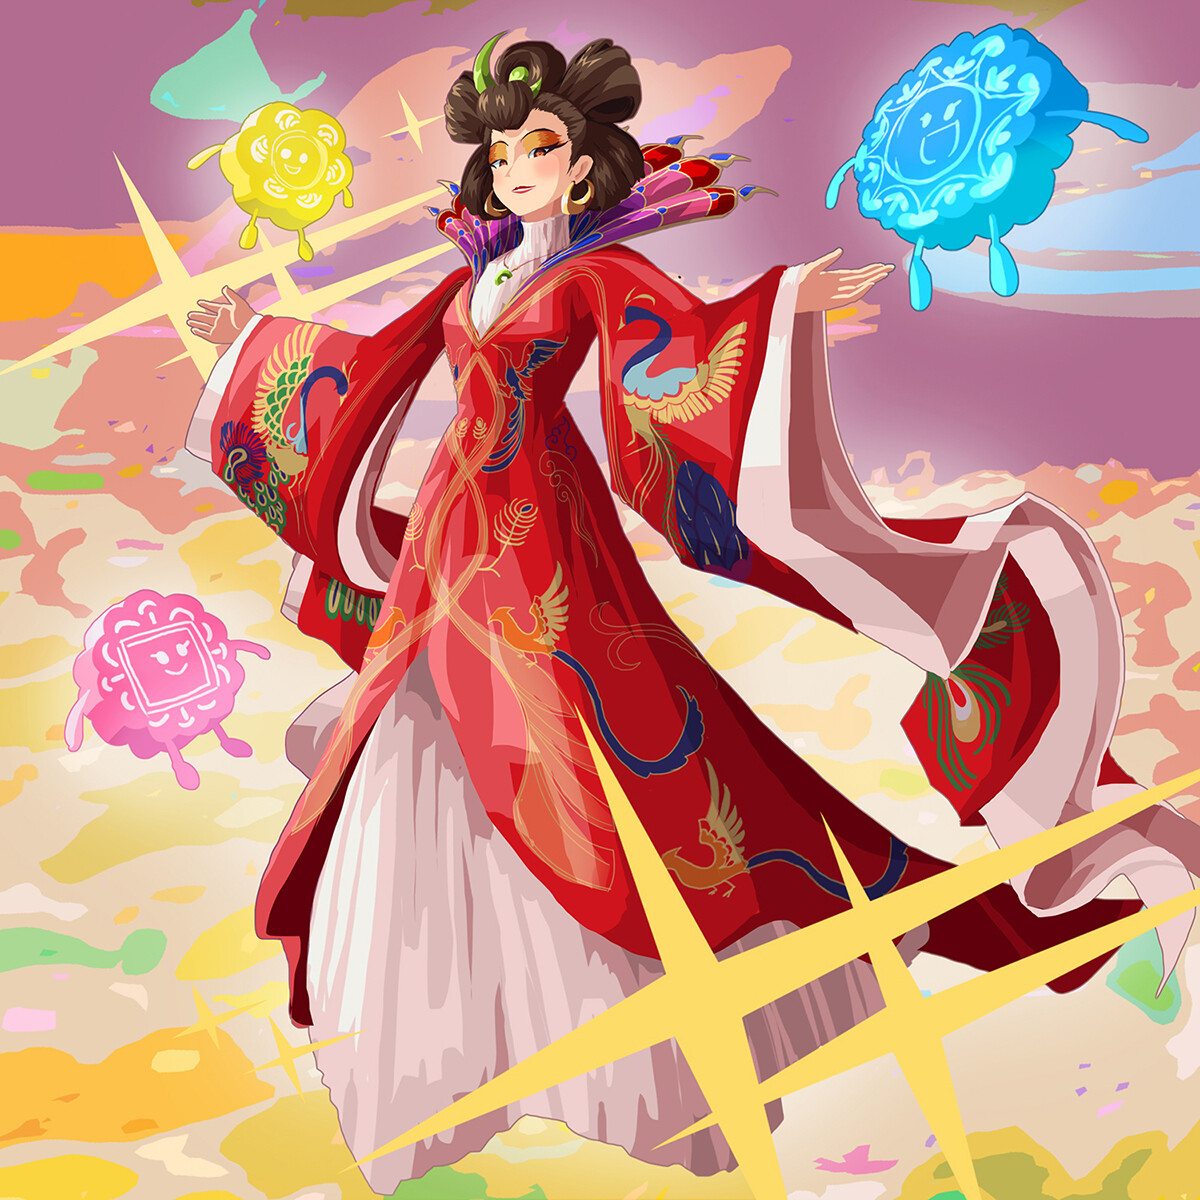 Чан чанга. Чанъэ Чан э китайская богиня. Чанъэ Чан э китайская богиня Луны. Китайская мифология Чанъэ богиня Луны. Чанъэ богиня Луны Легенда.